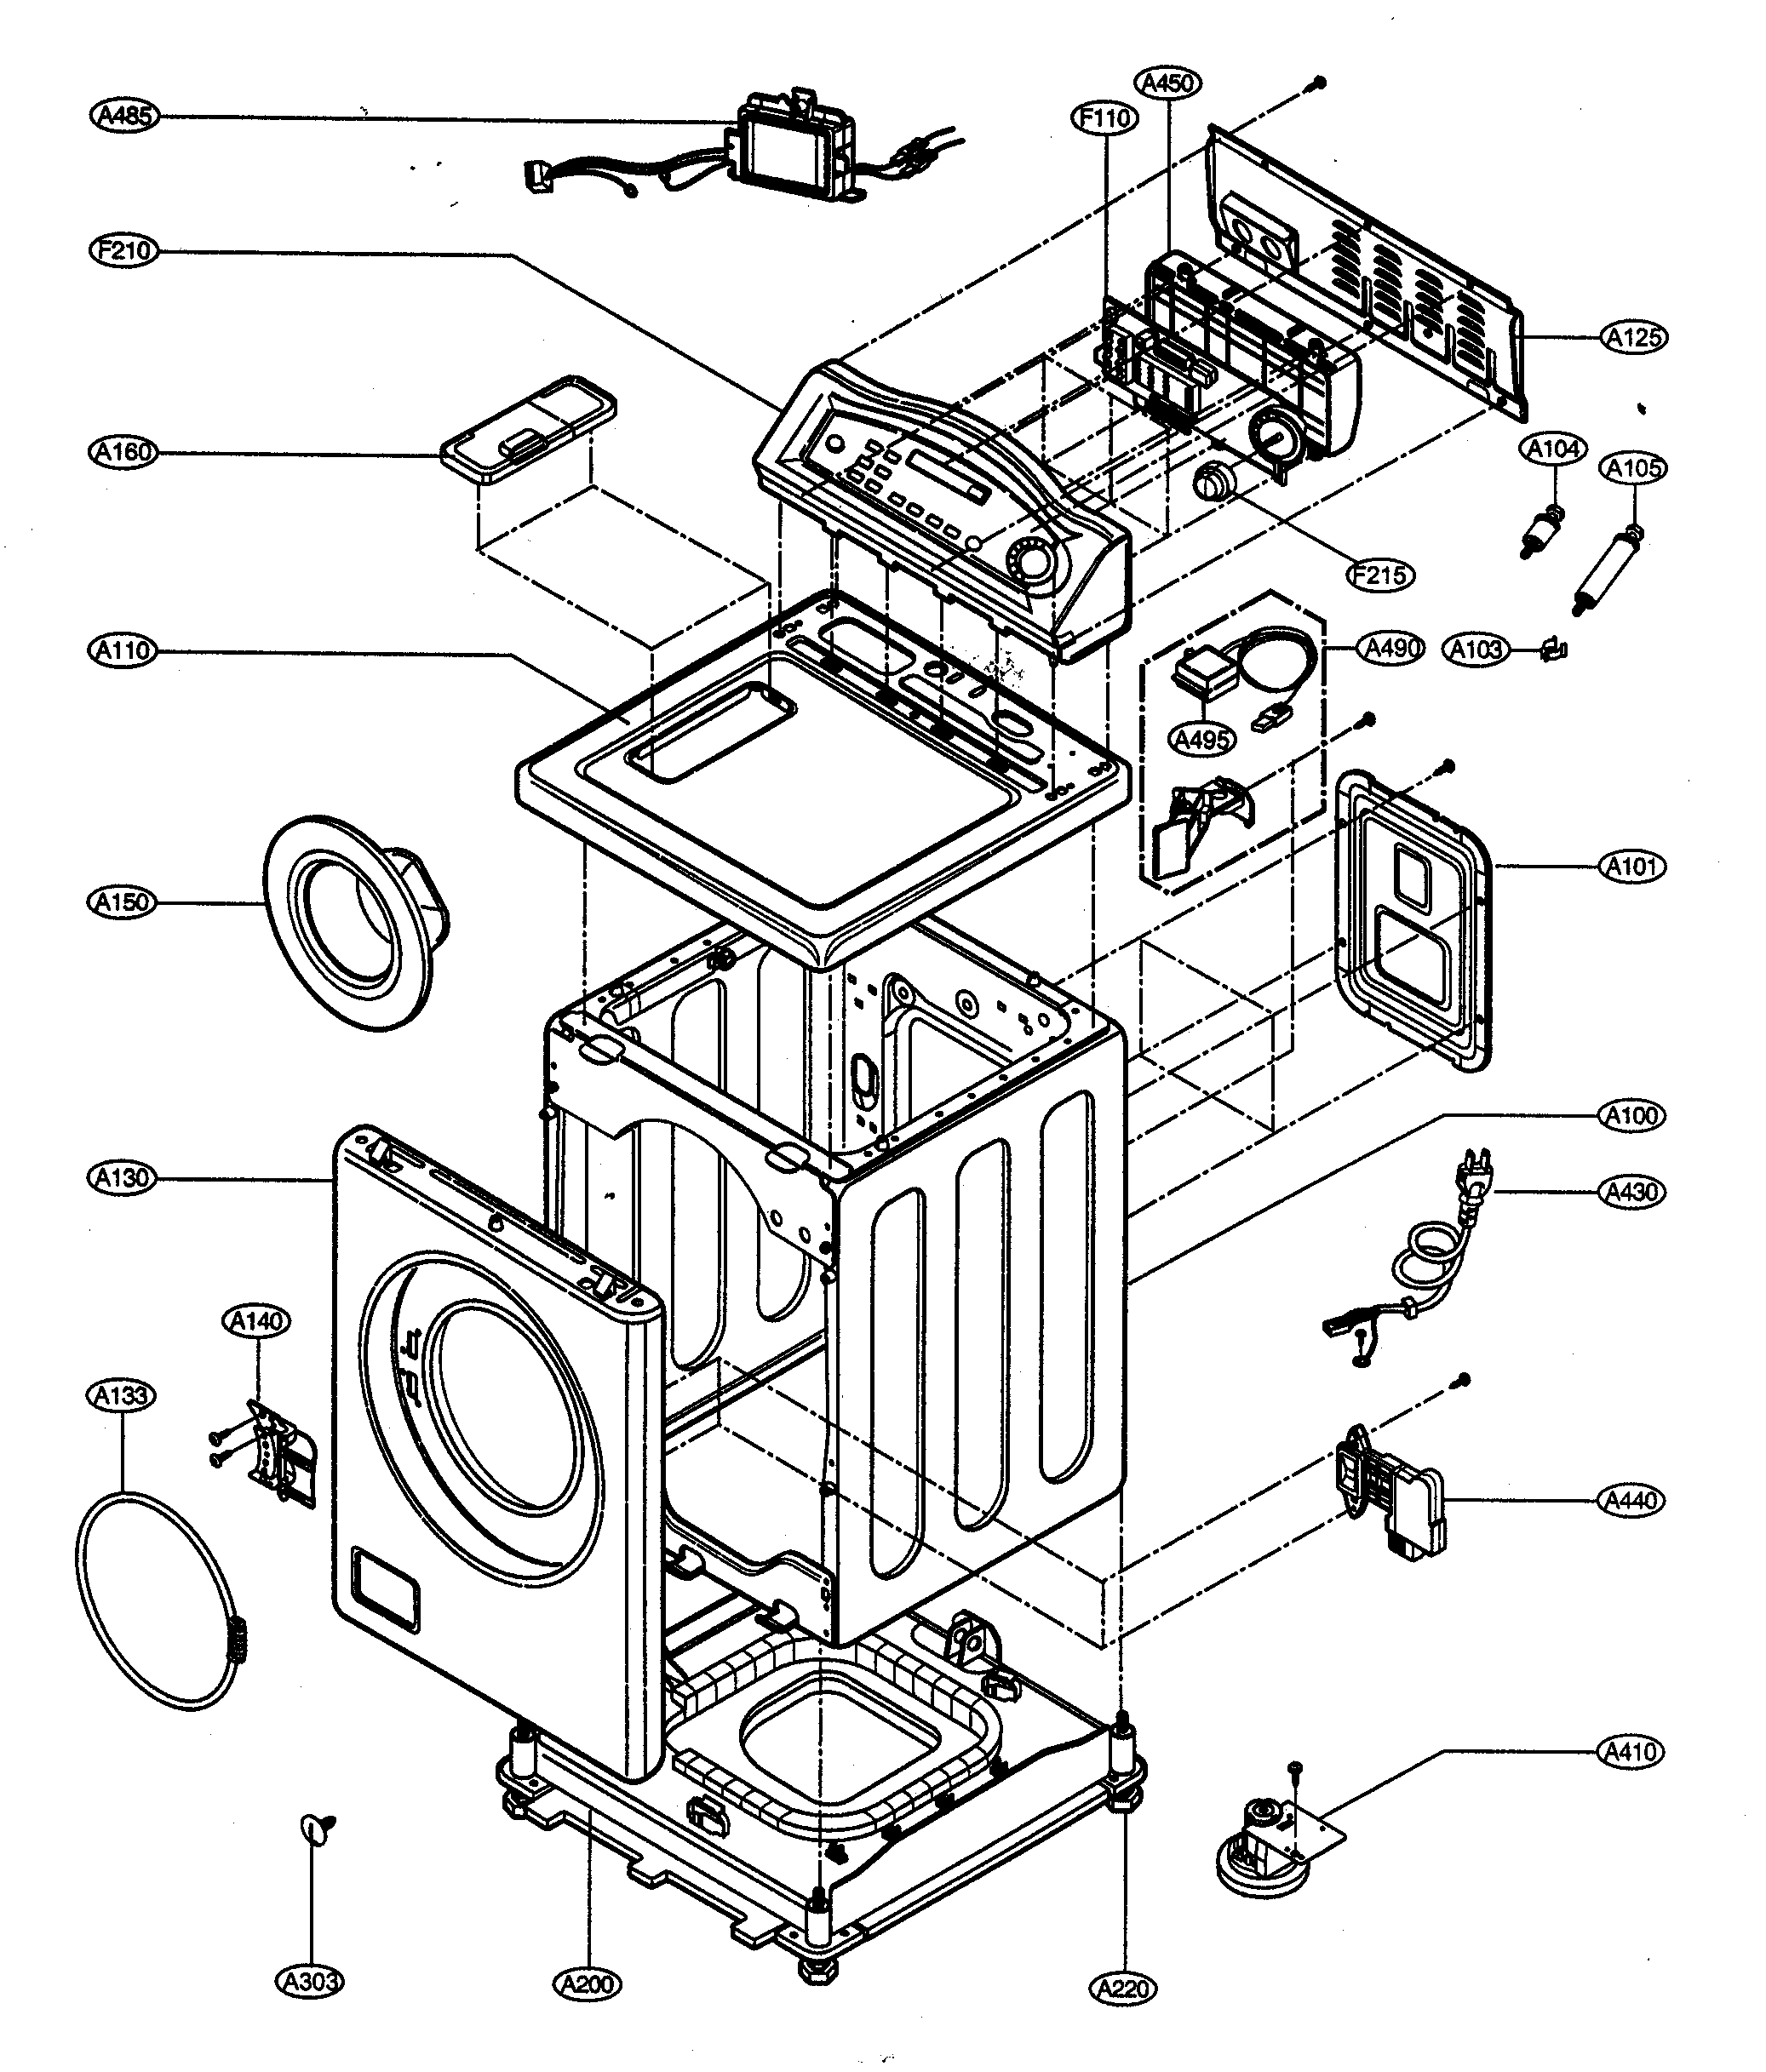 Front Loading Washing Machine Circuit Diagram